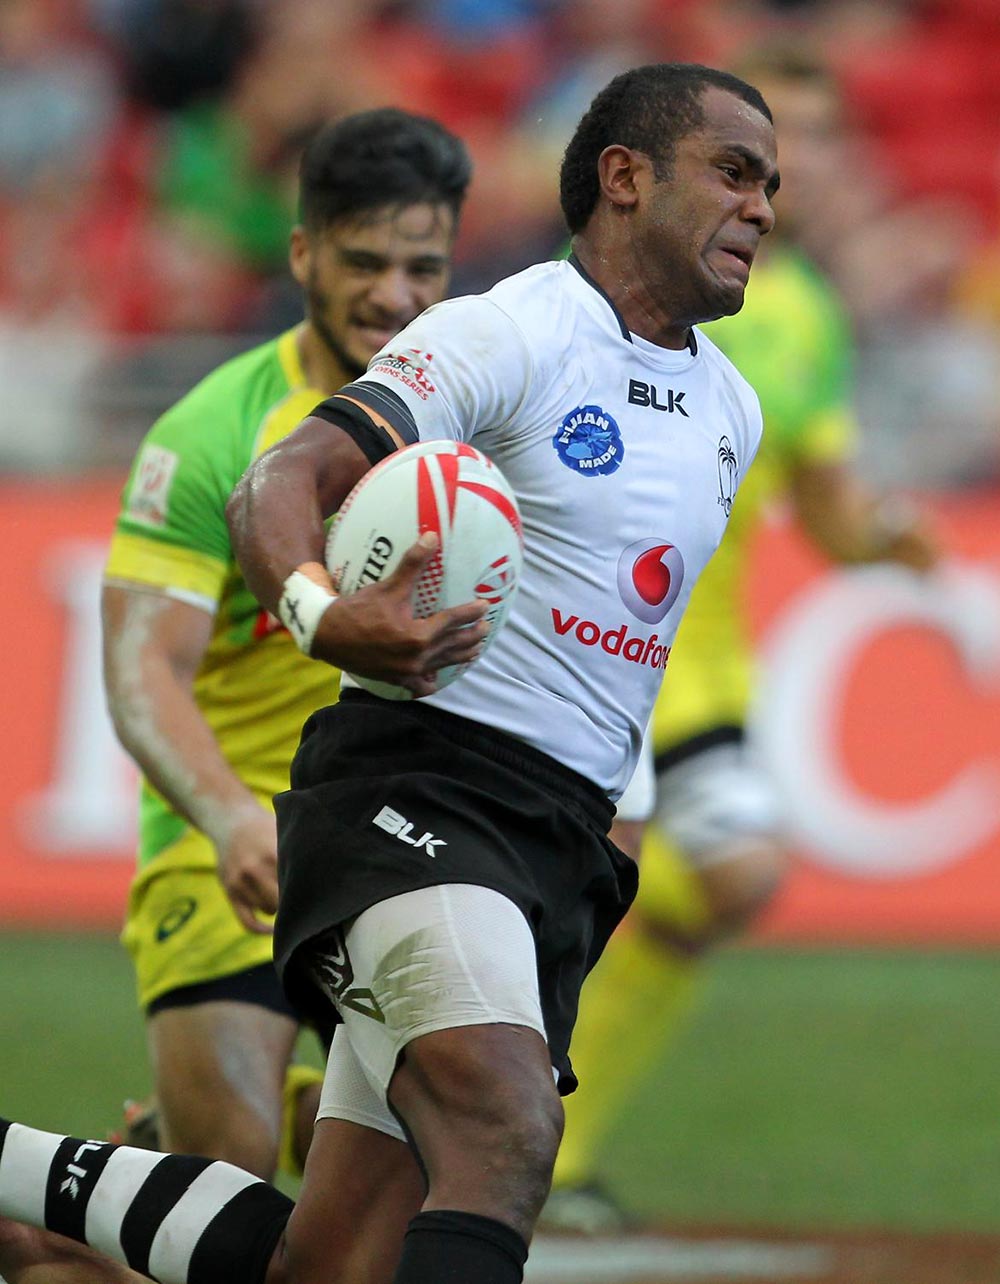 Fiji sevens player Kitione Taliga tall